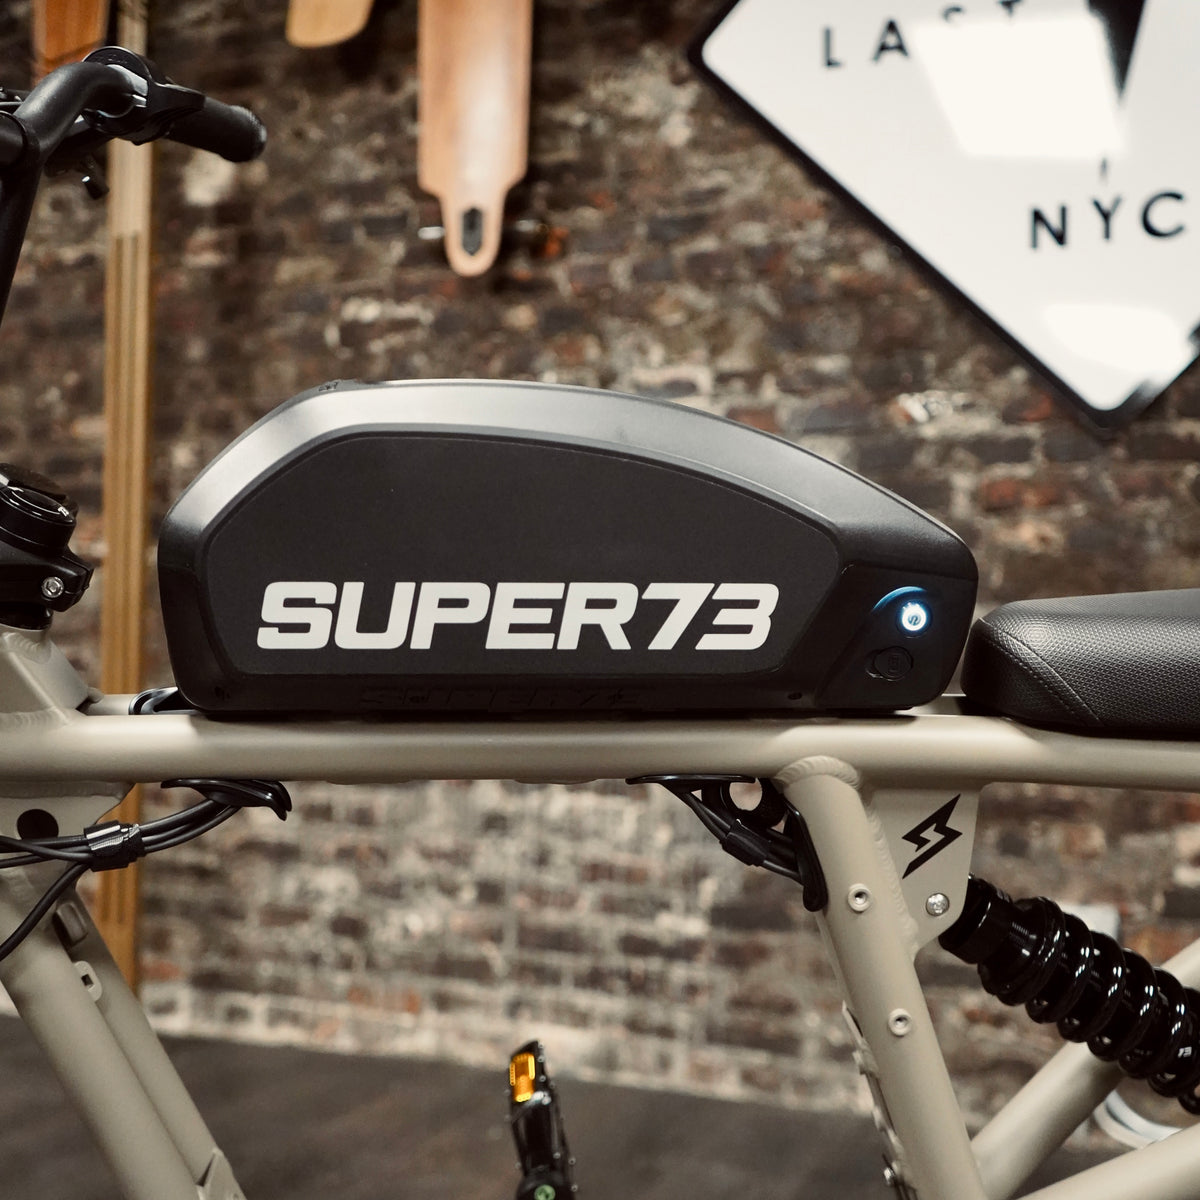 R-Brooklyn - Super73 Electric Bike